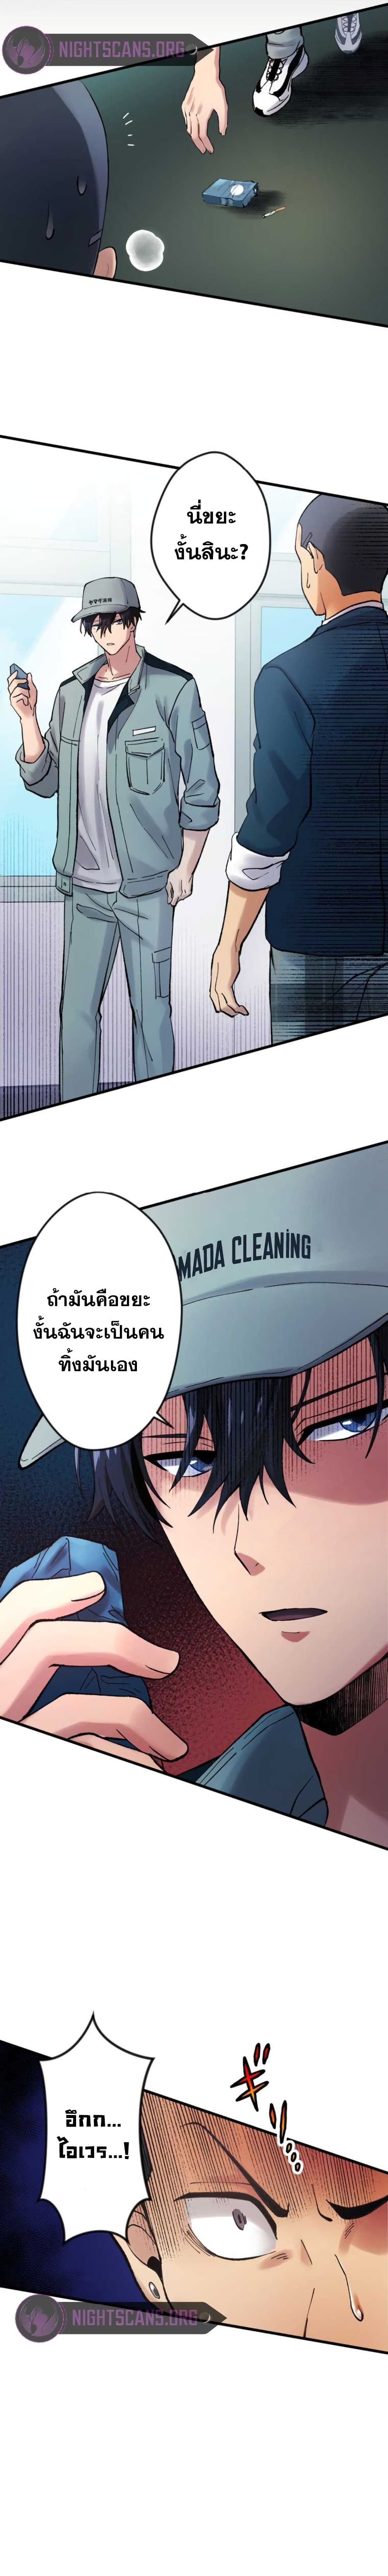 Yakuza Cleaner 2-2